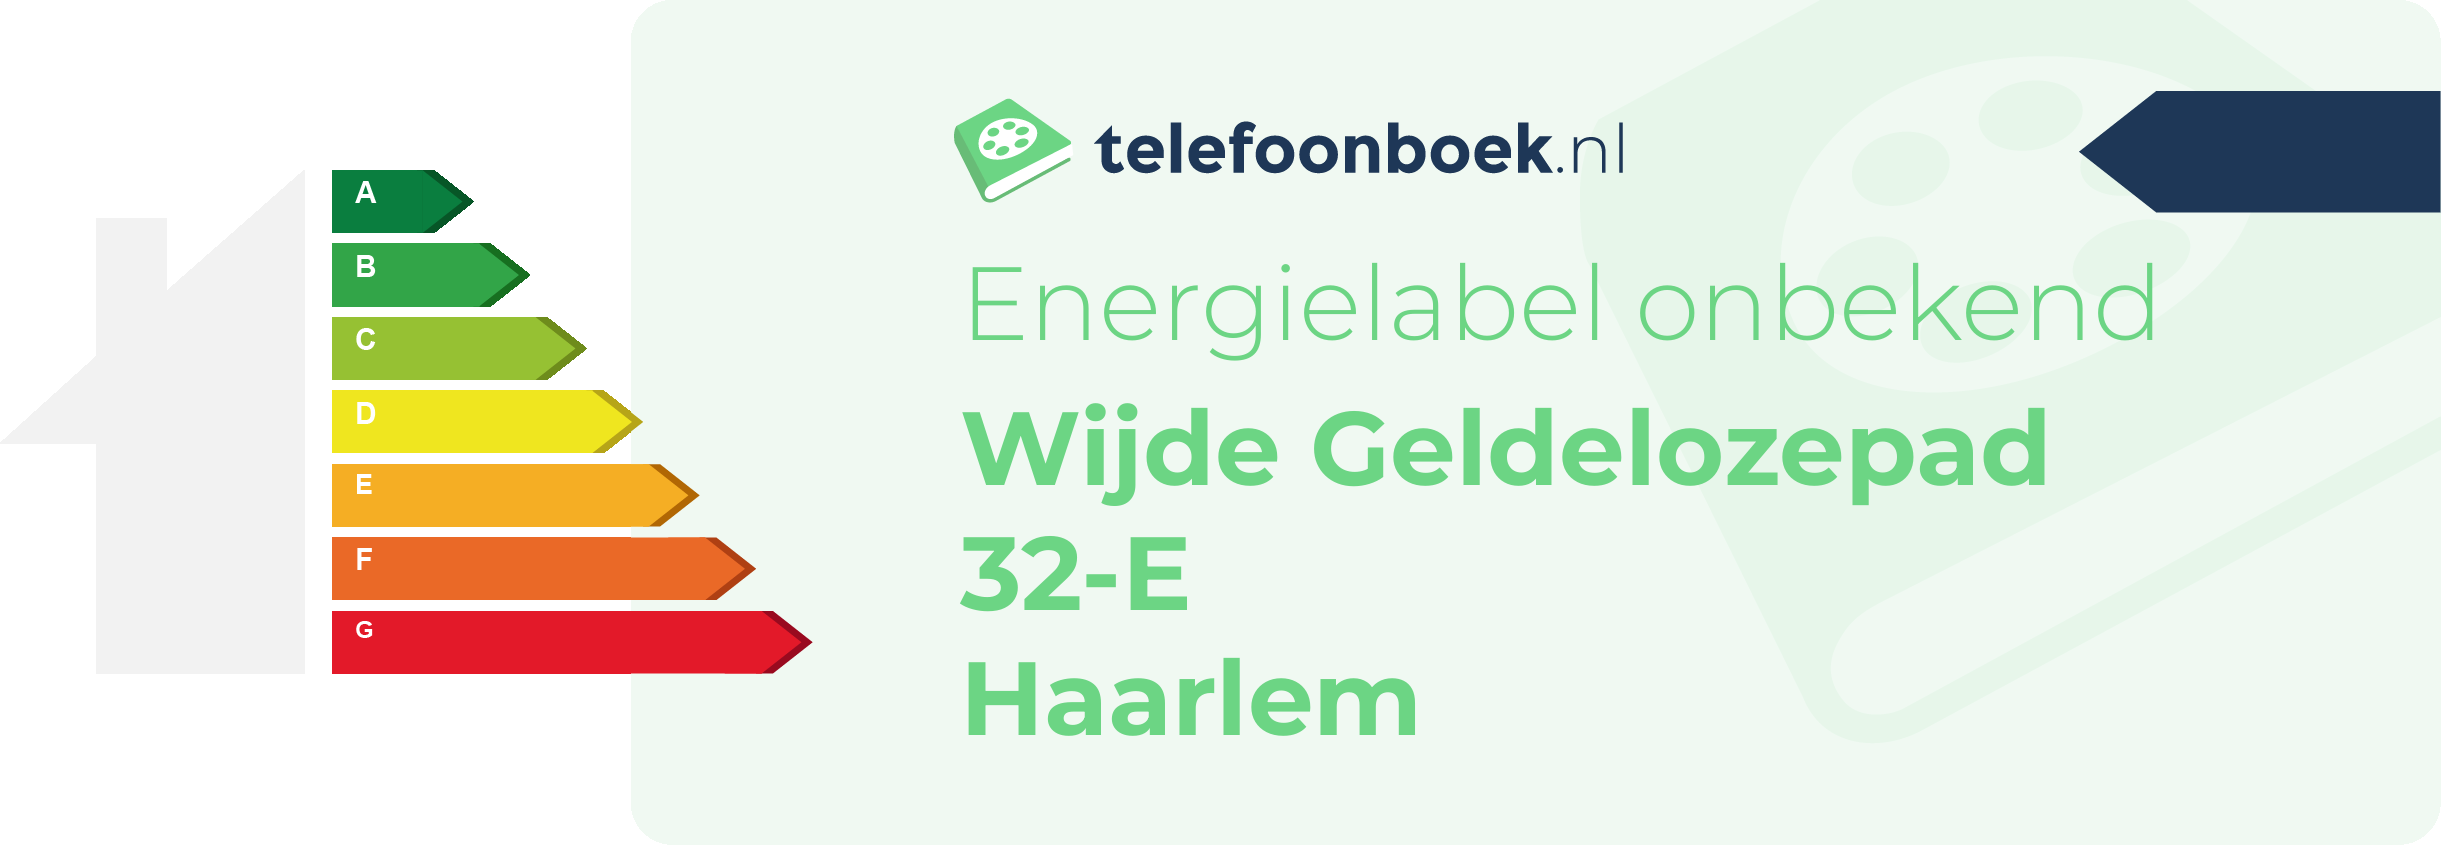 Energielabel Wijde Geldelozepad 32-E Haarlem